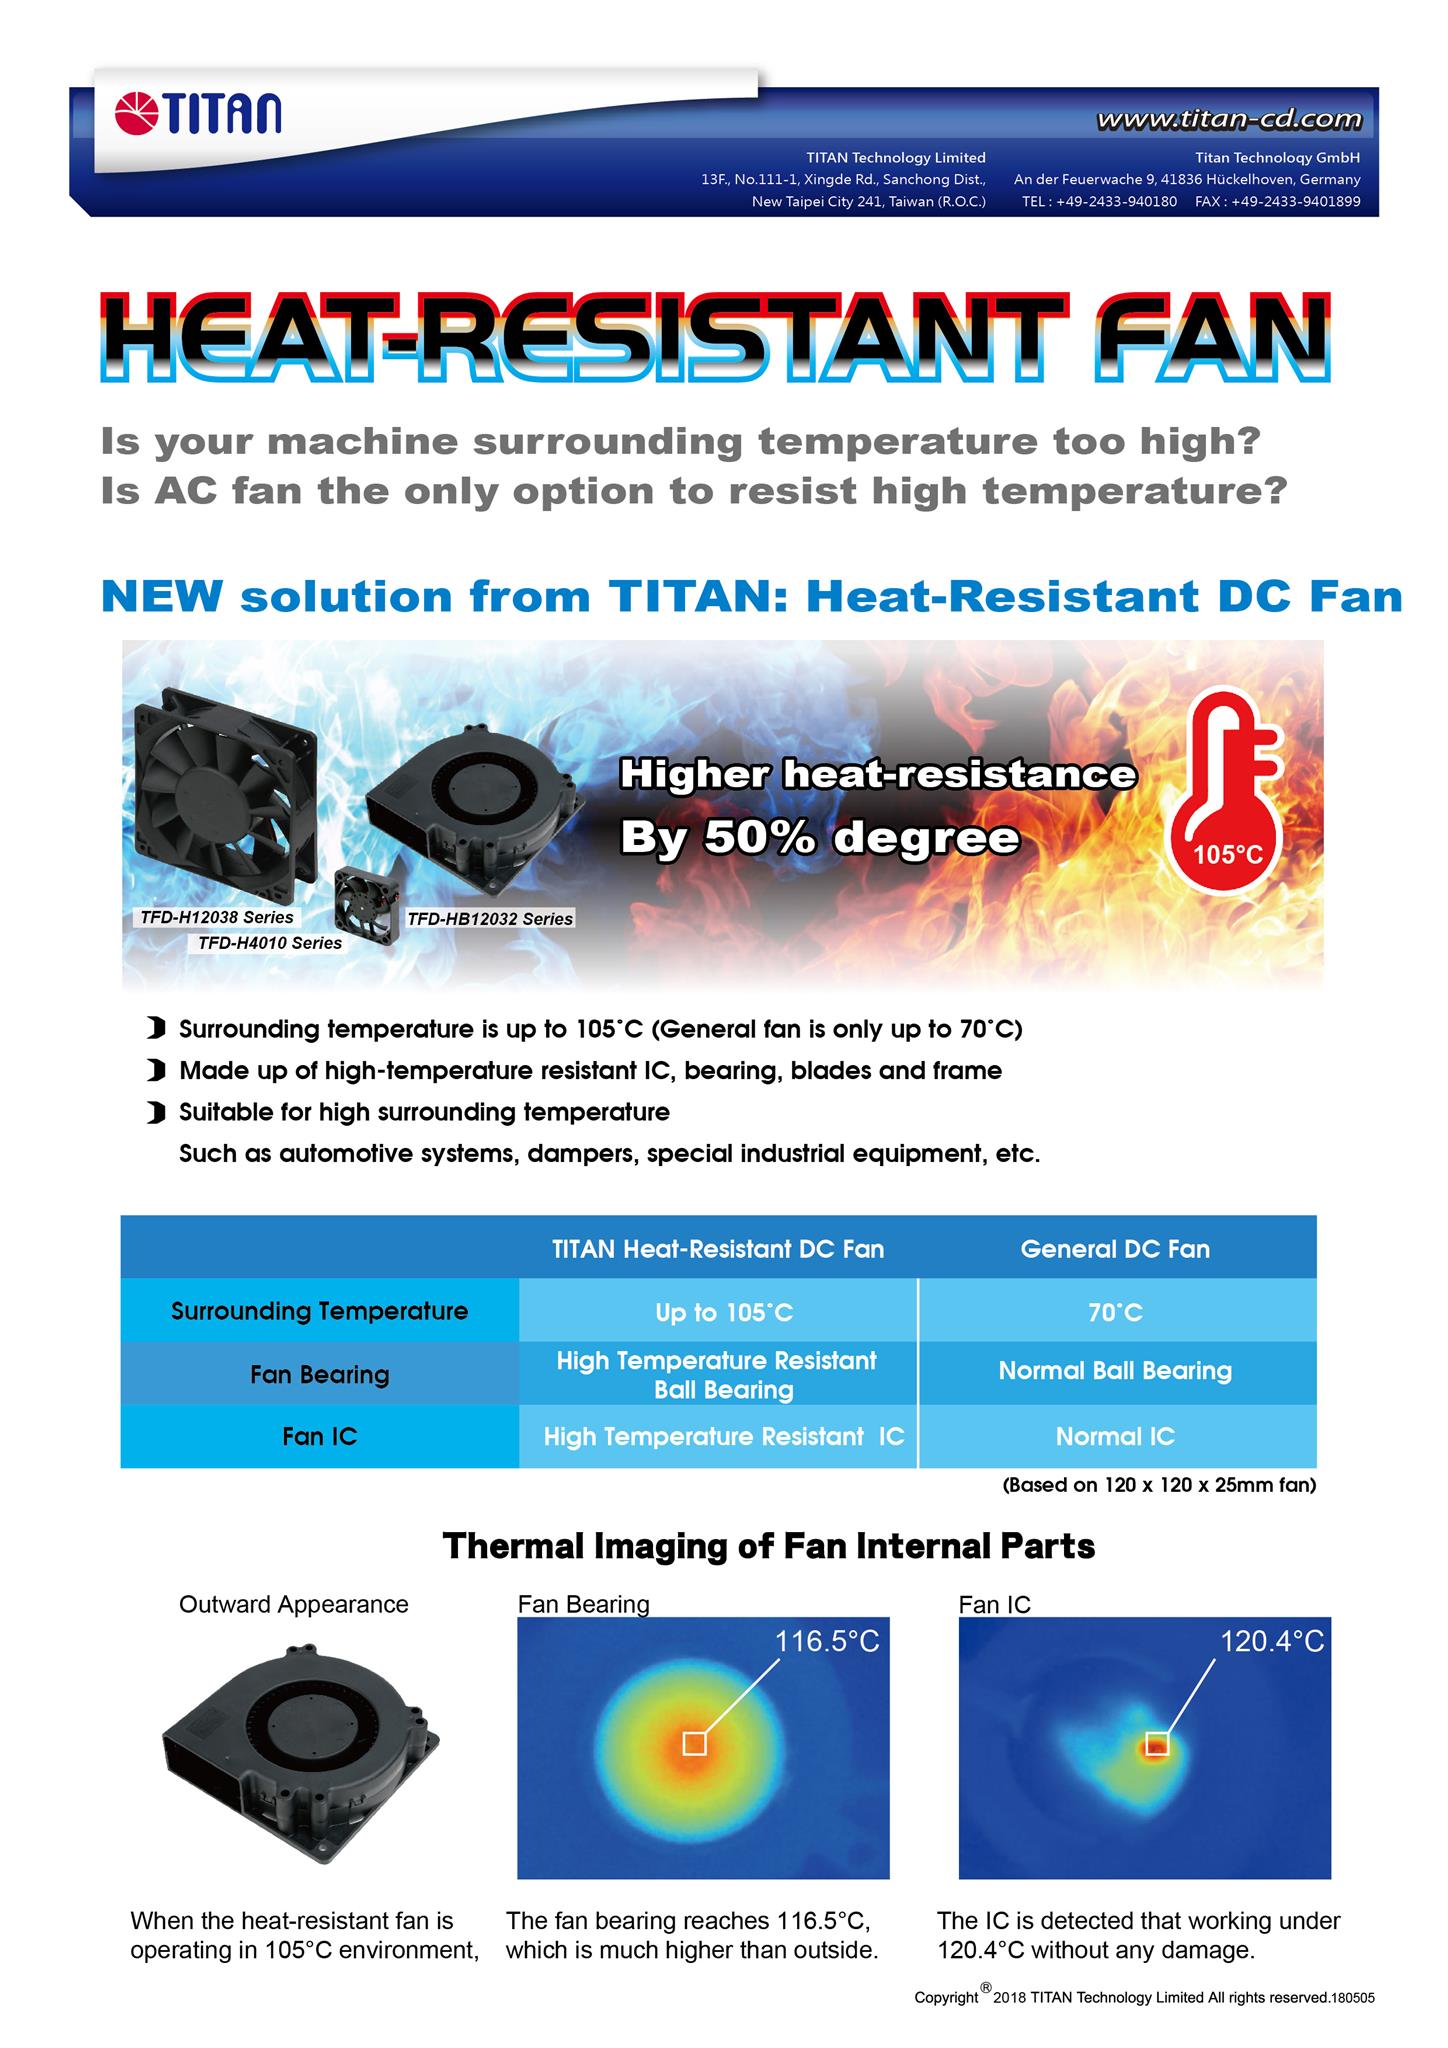 TITAN düşük profil CPU soğutucusu sadece 23-30mm yüksekliğindedir. Düşük profil kasa veya diğer HTPC kasa için uygundur.